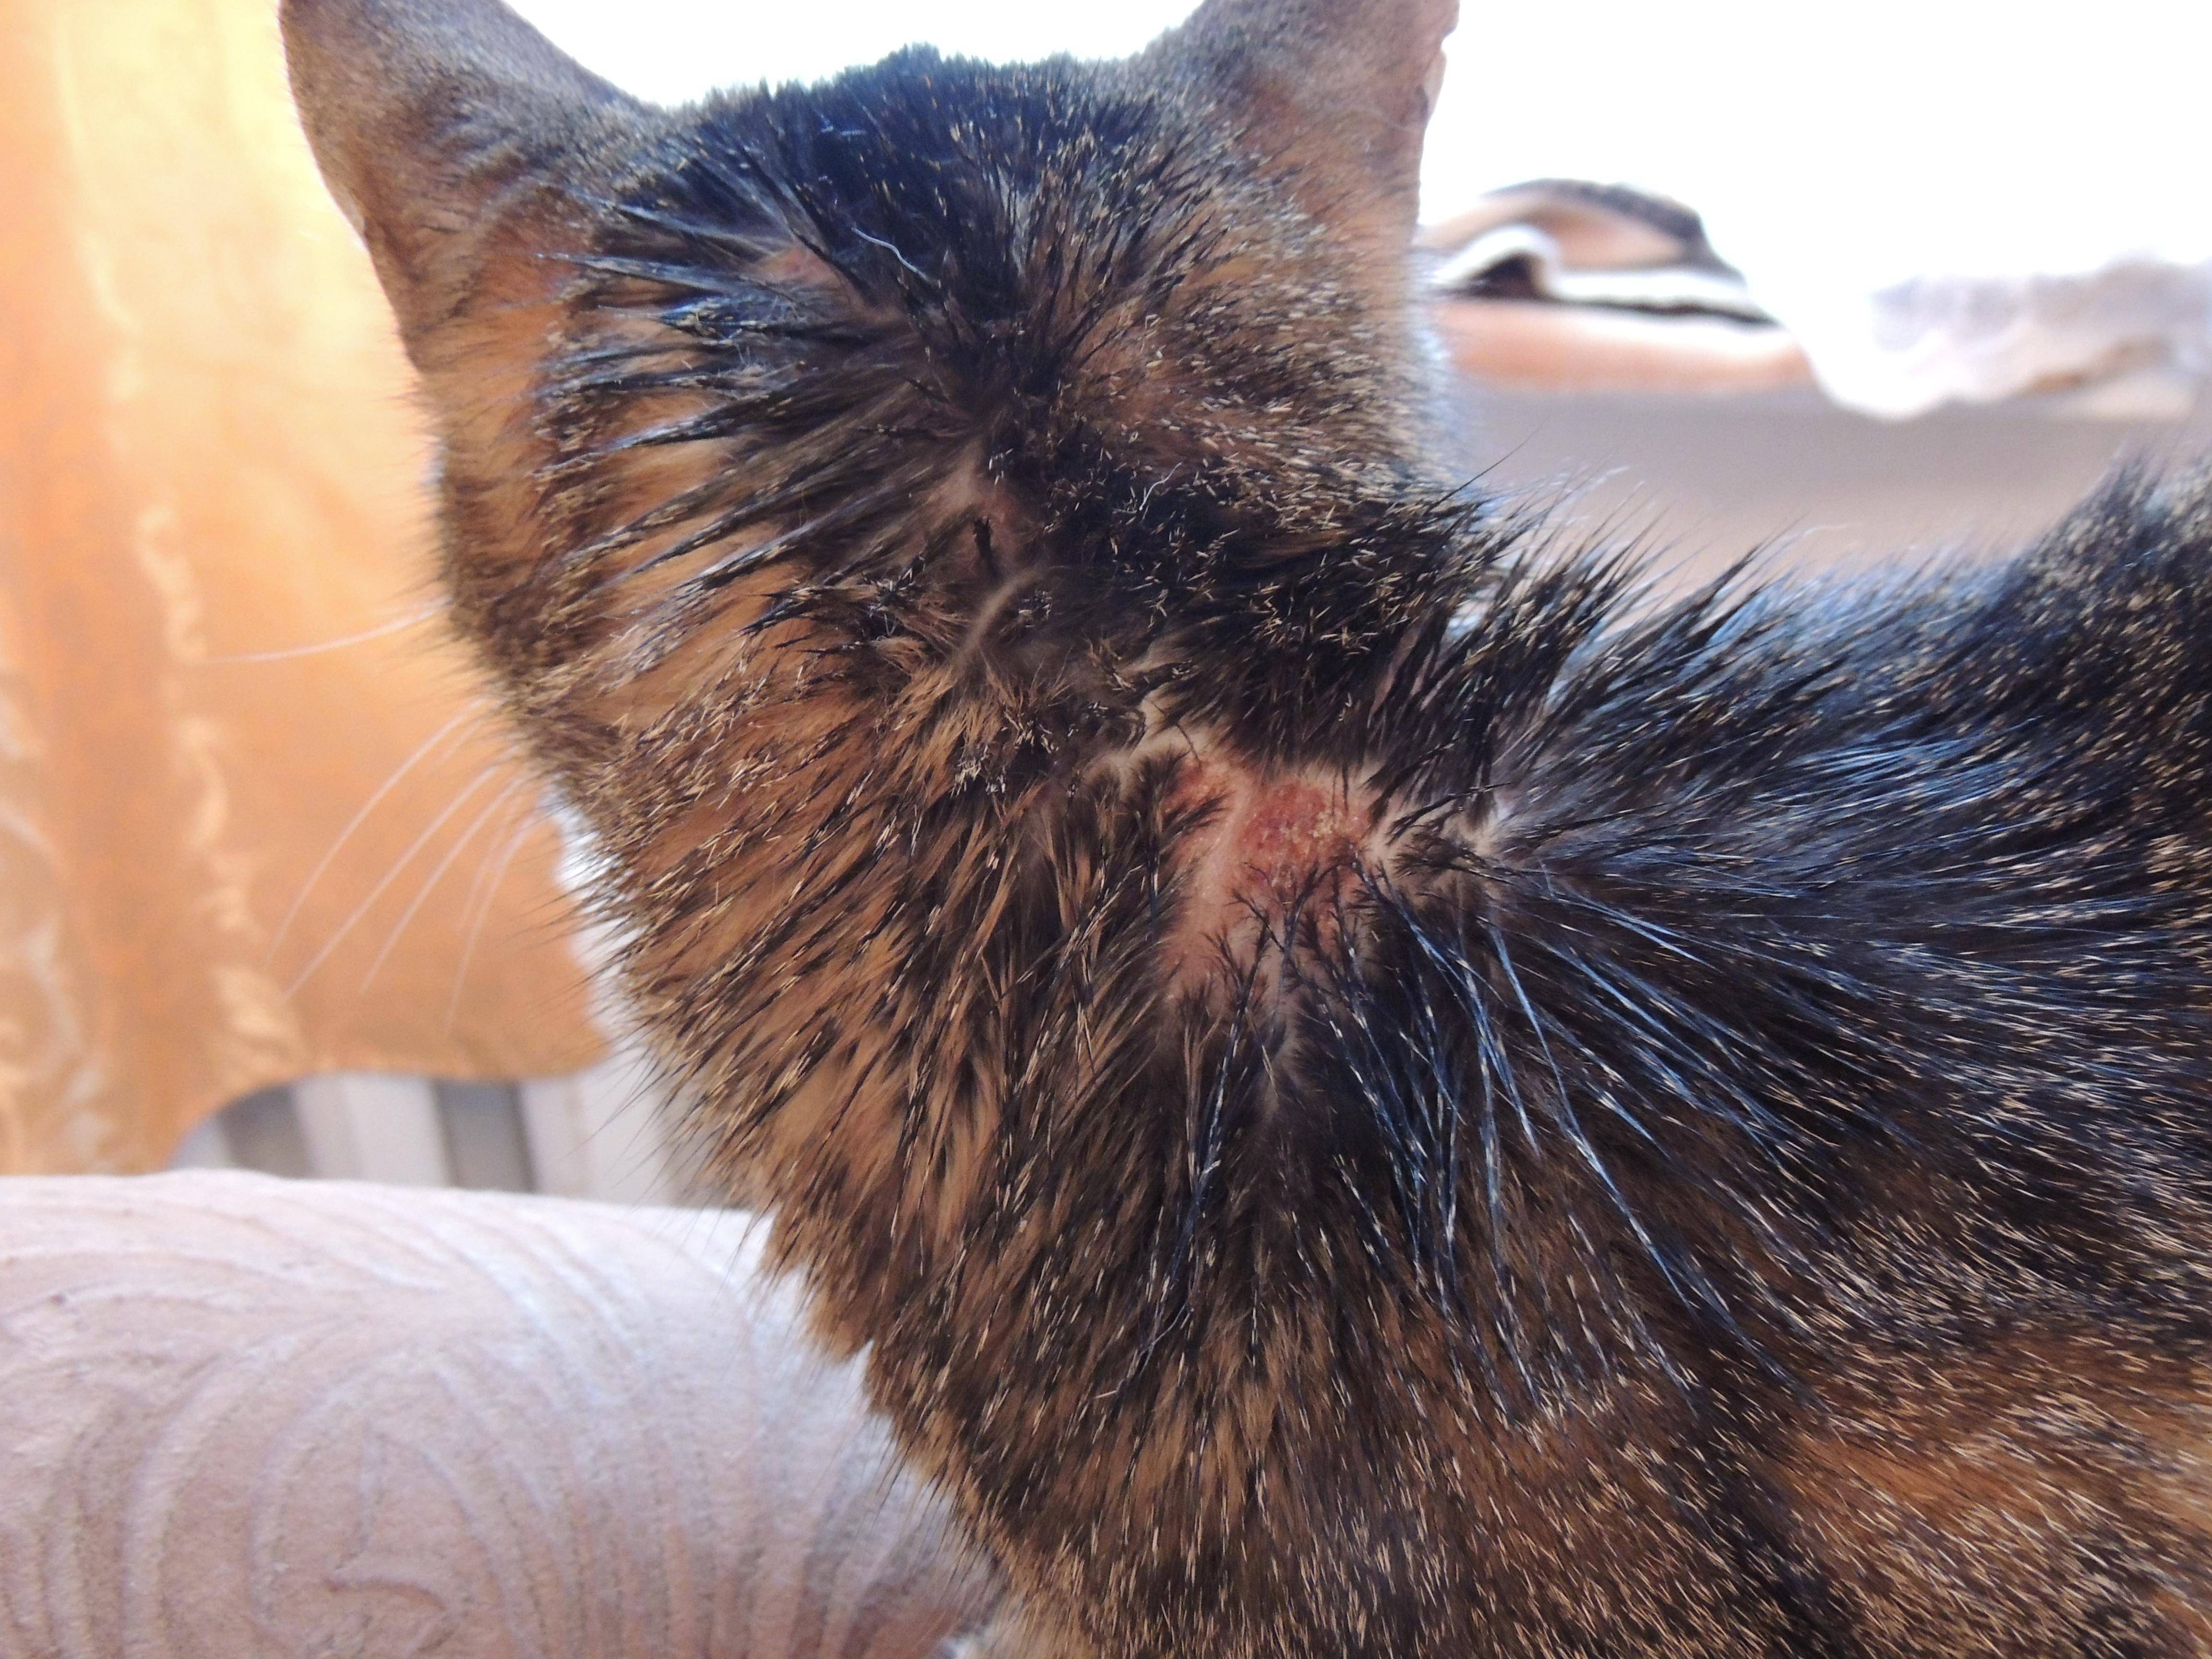 Демодекоз (чесоточный клещ) у кошек: симптомы, лечение чесотки, фото